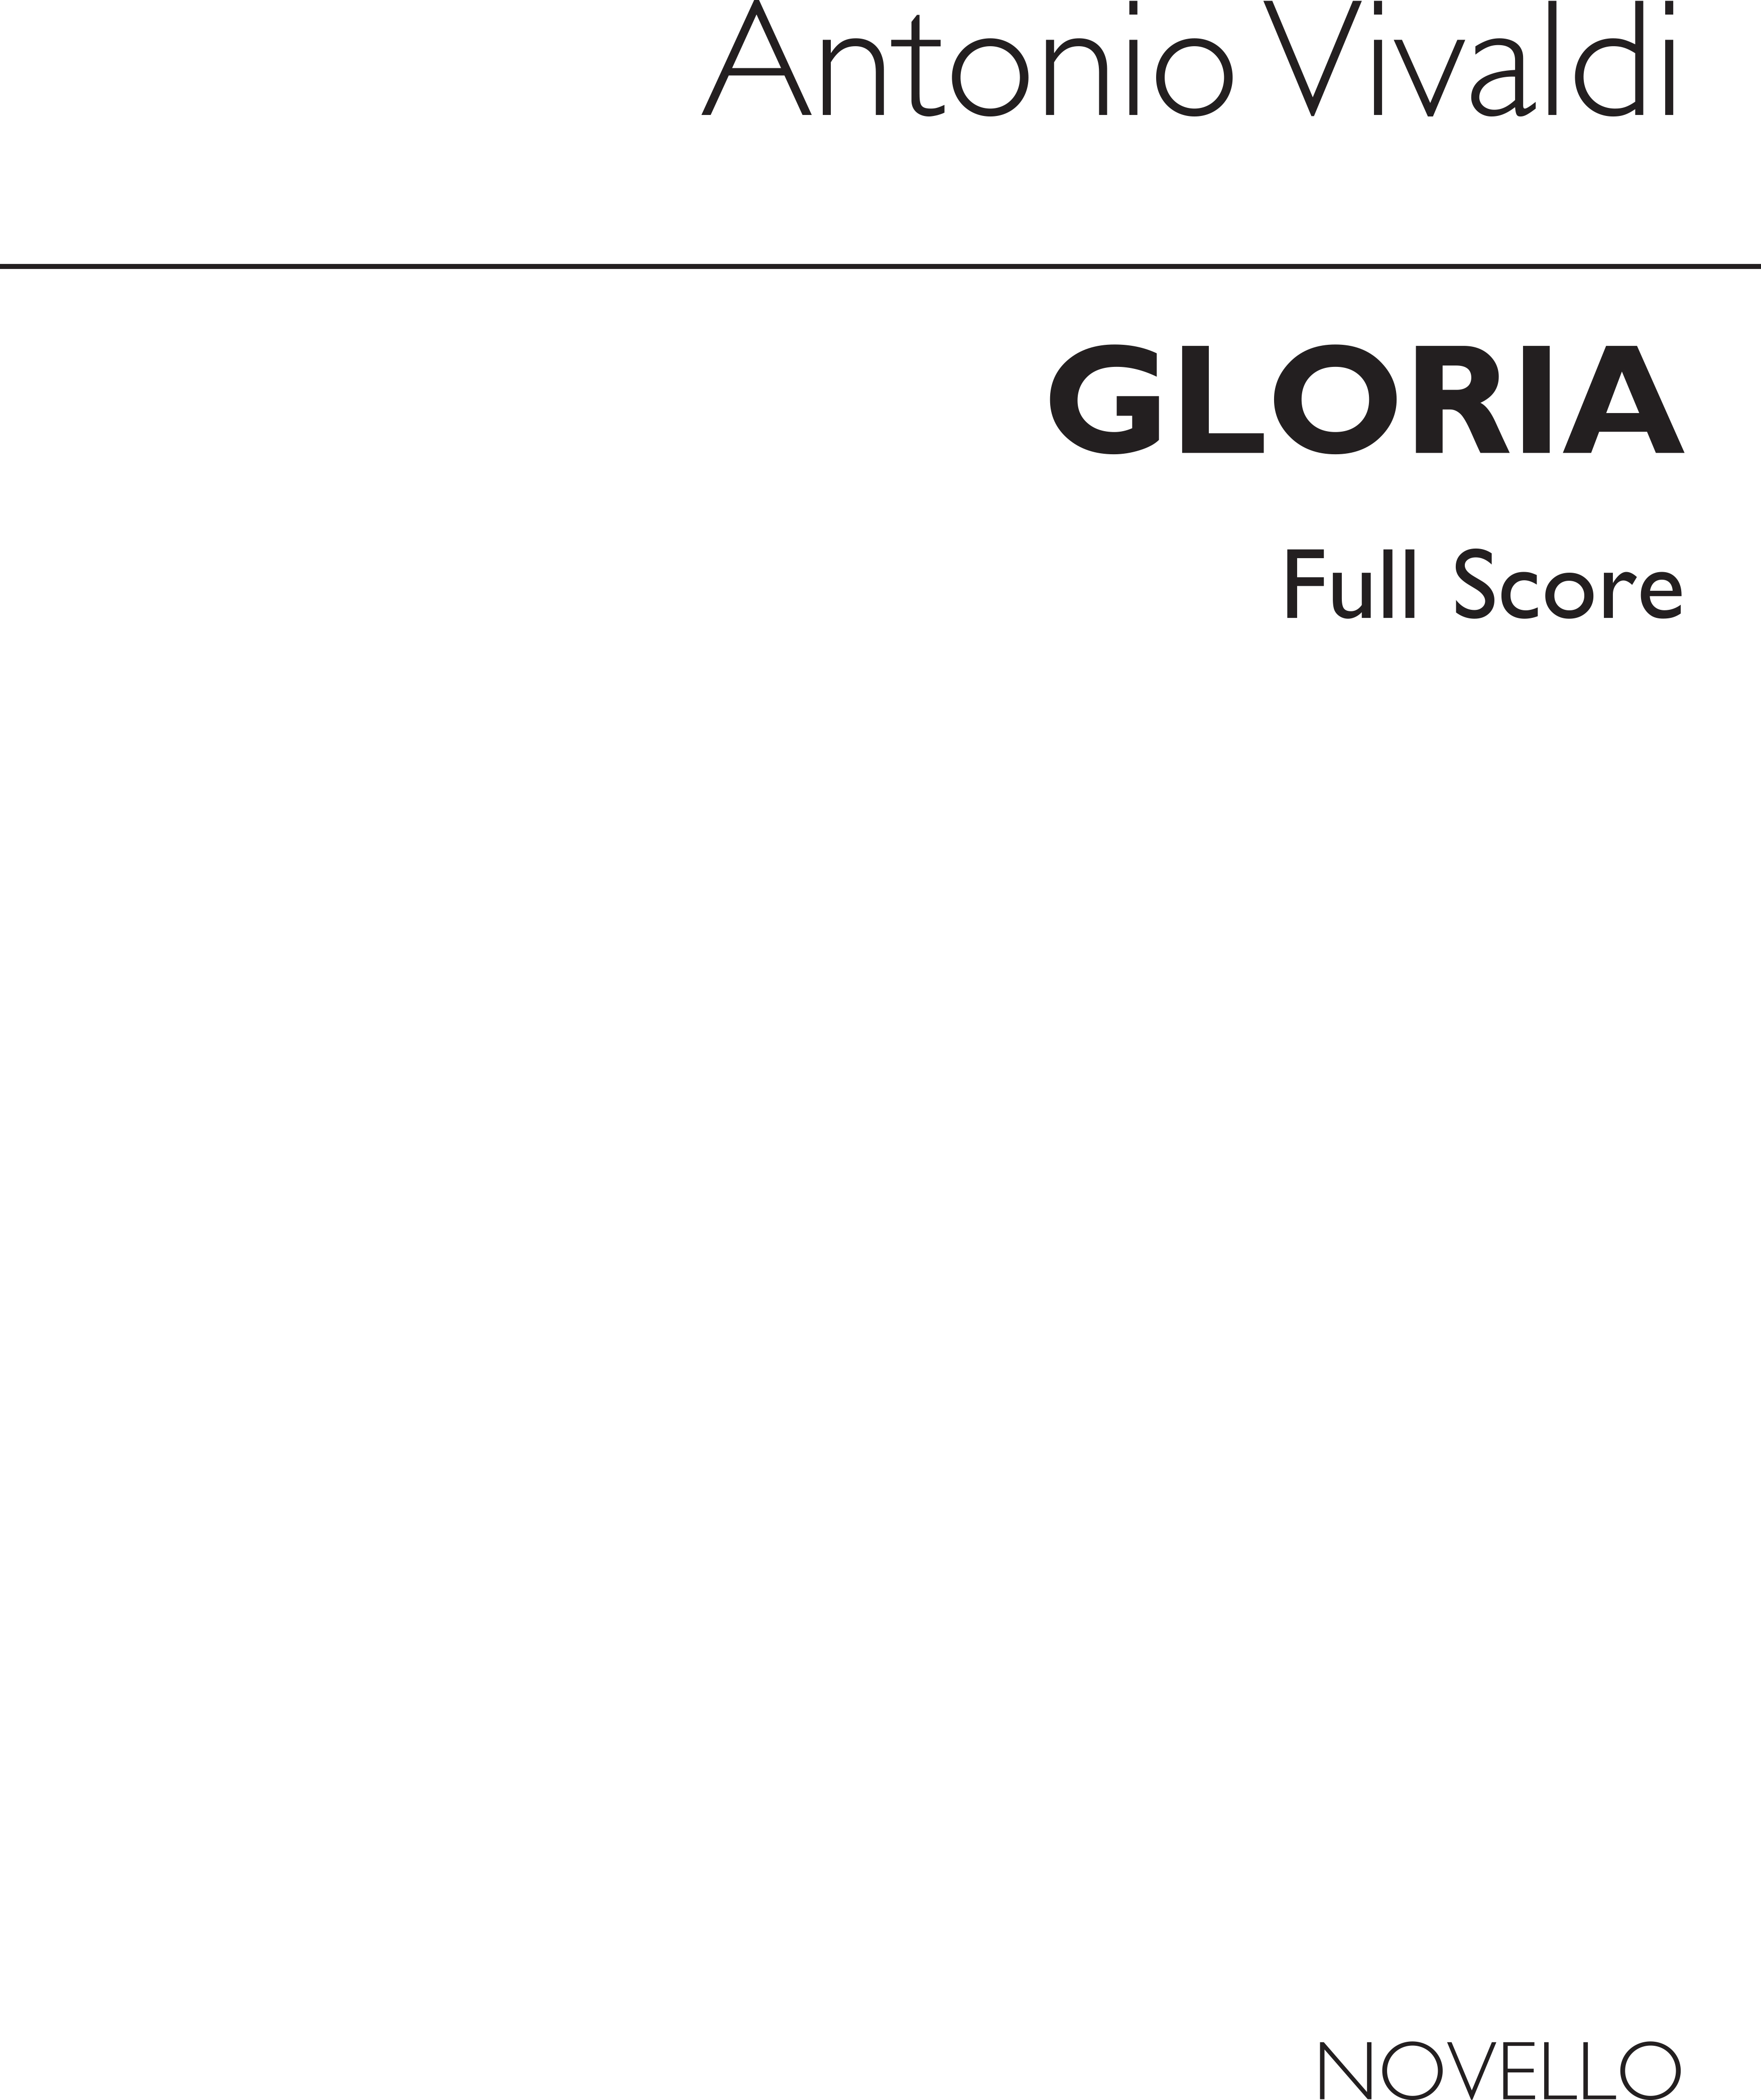 Antonio Vivaldi: Gloria in D RV.589 (Cameron ed.) - Full Score: SATB: Score